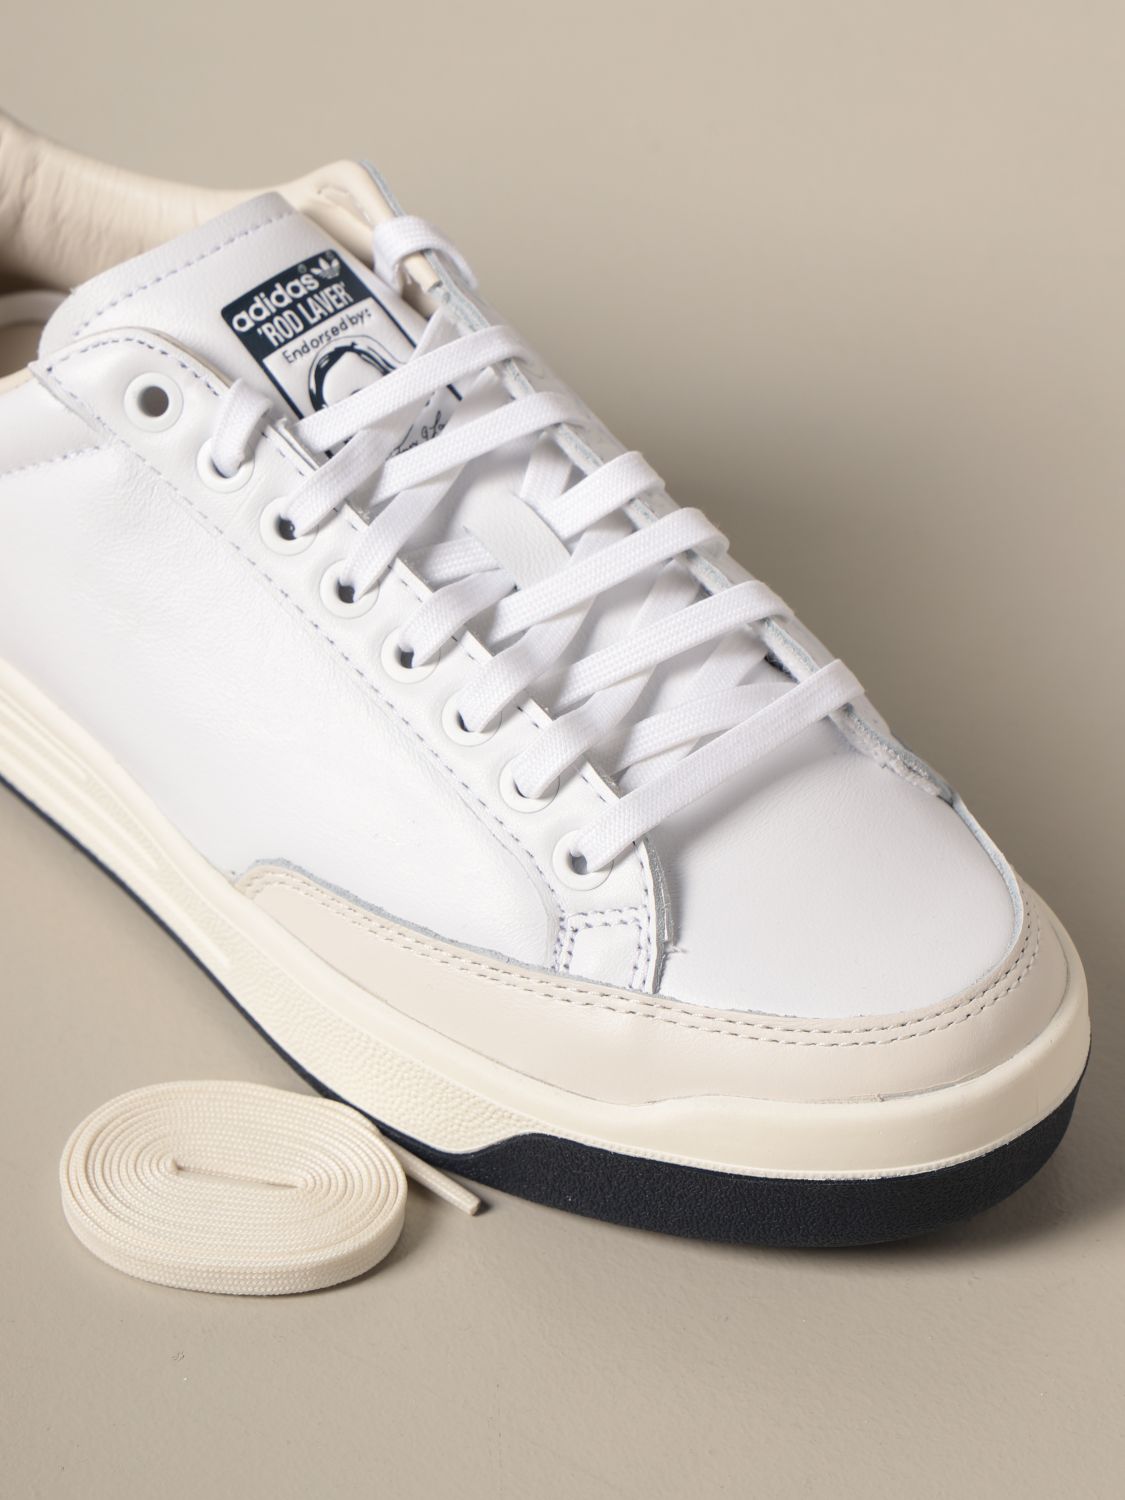 Adidas Originals Rod Laver Leather Sneakers Sneakers Adidas Originals Men White Sneakers Adidas Originals Fx5606 Giglio En